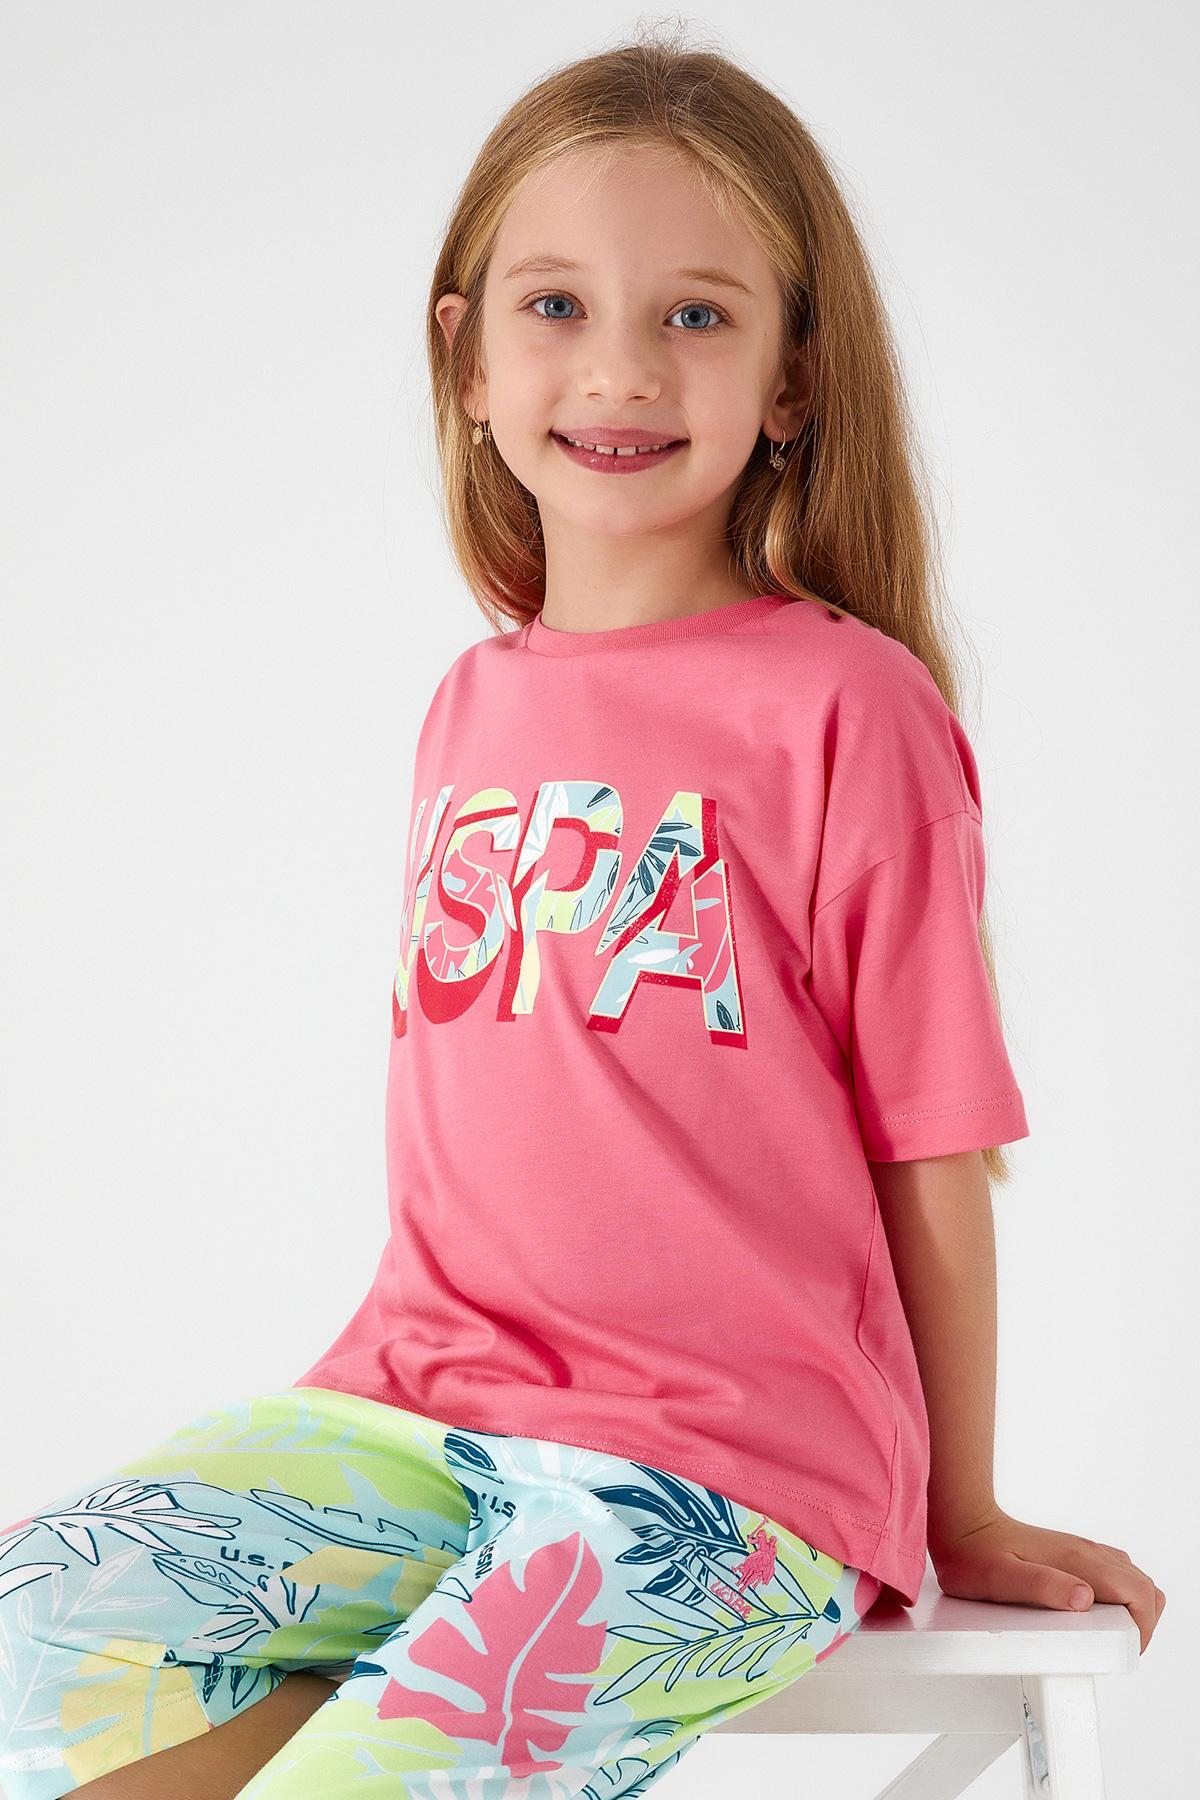 U.S. POLO ASSN. Komplet šorc i majica za devojčice US1413-G roze